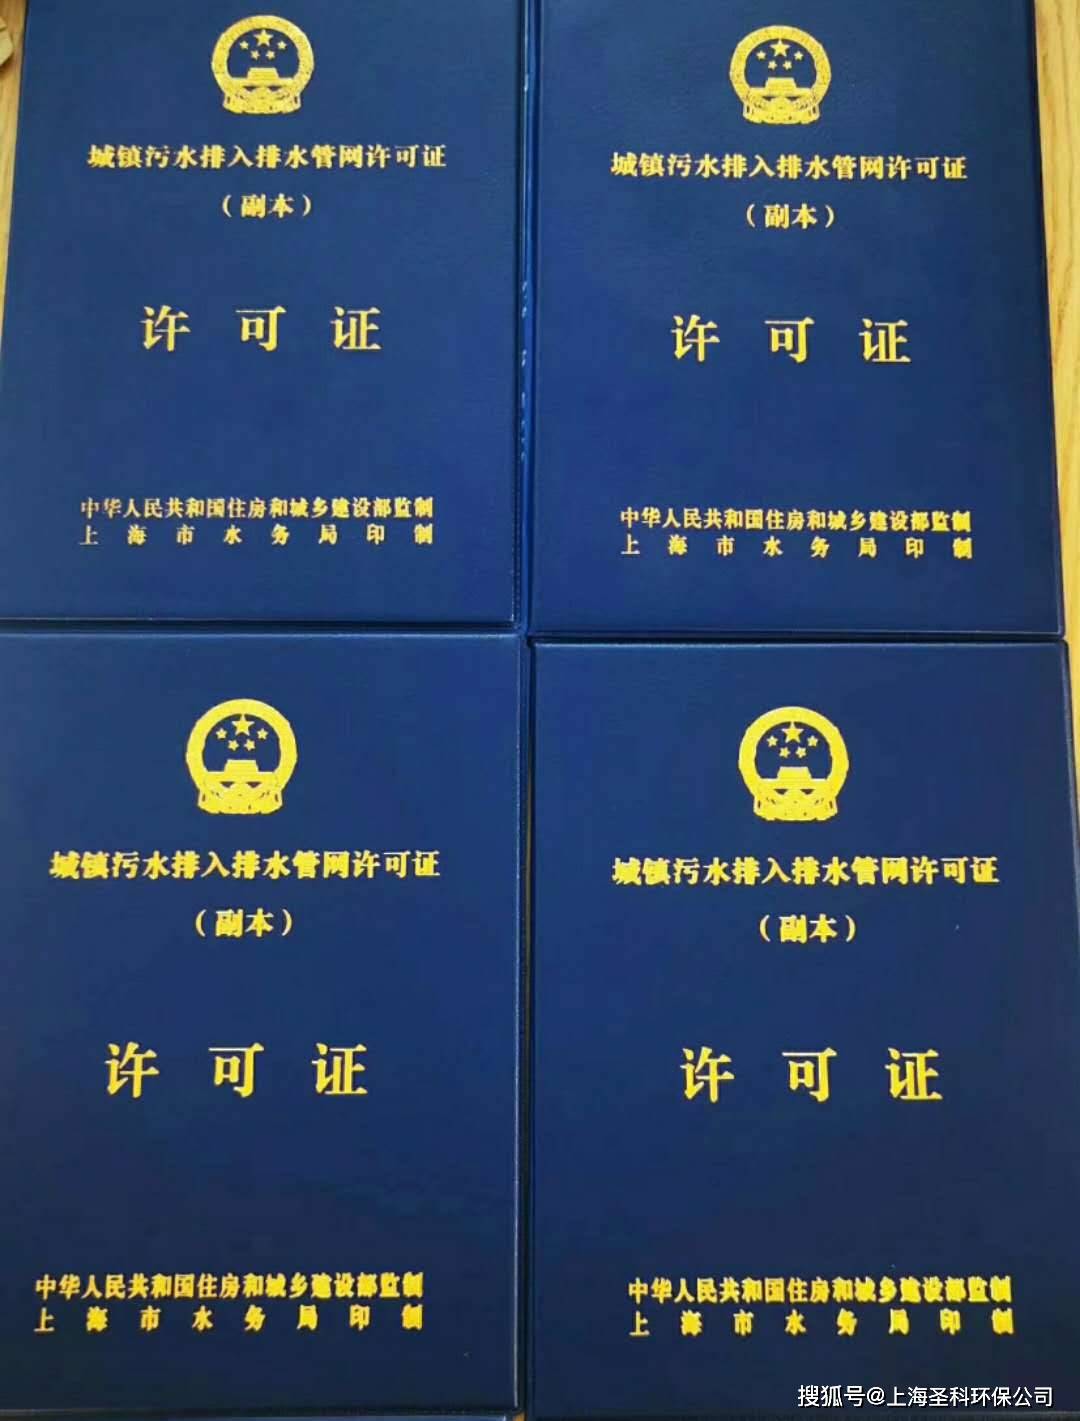 上海装饰公司资质证书图片